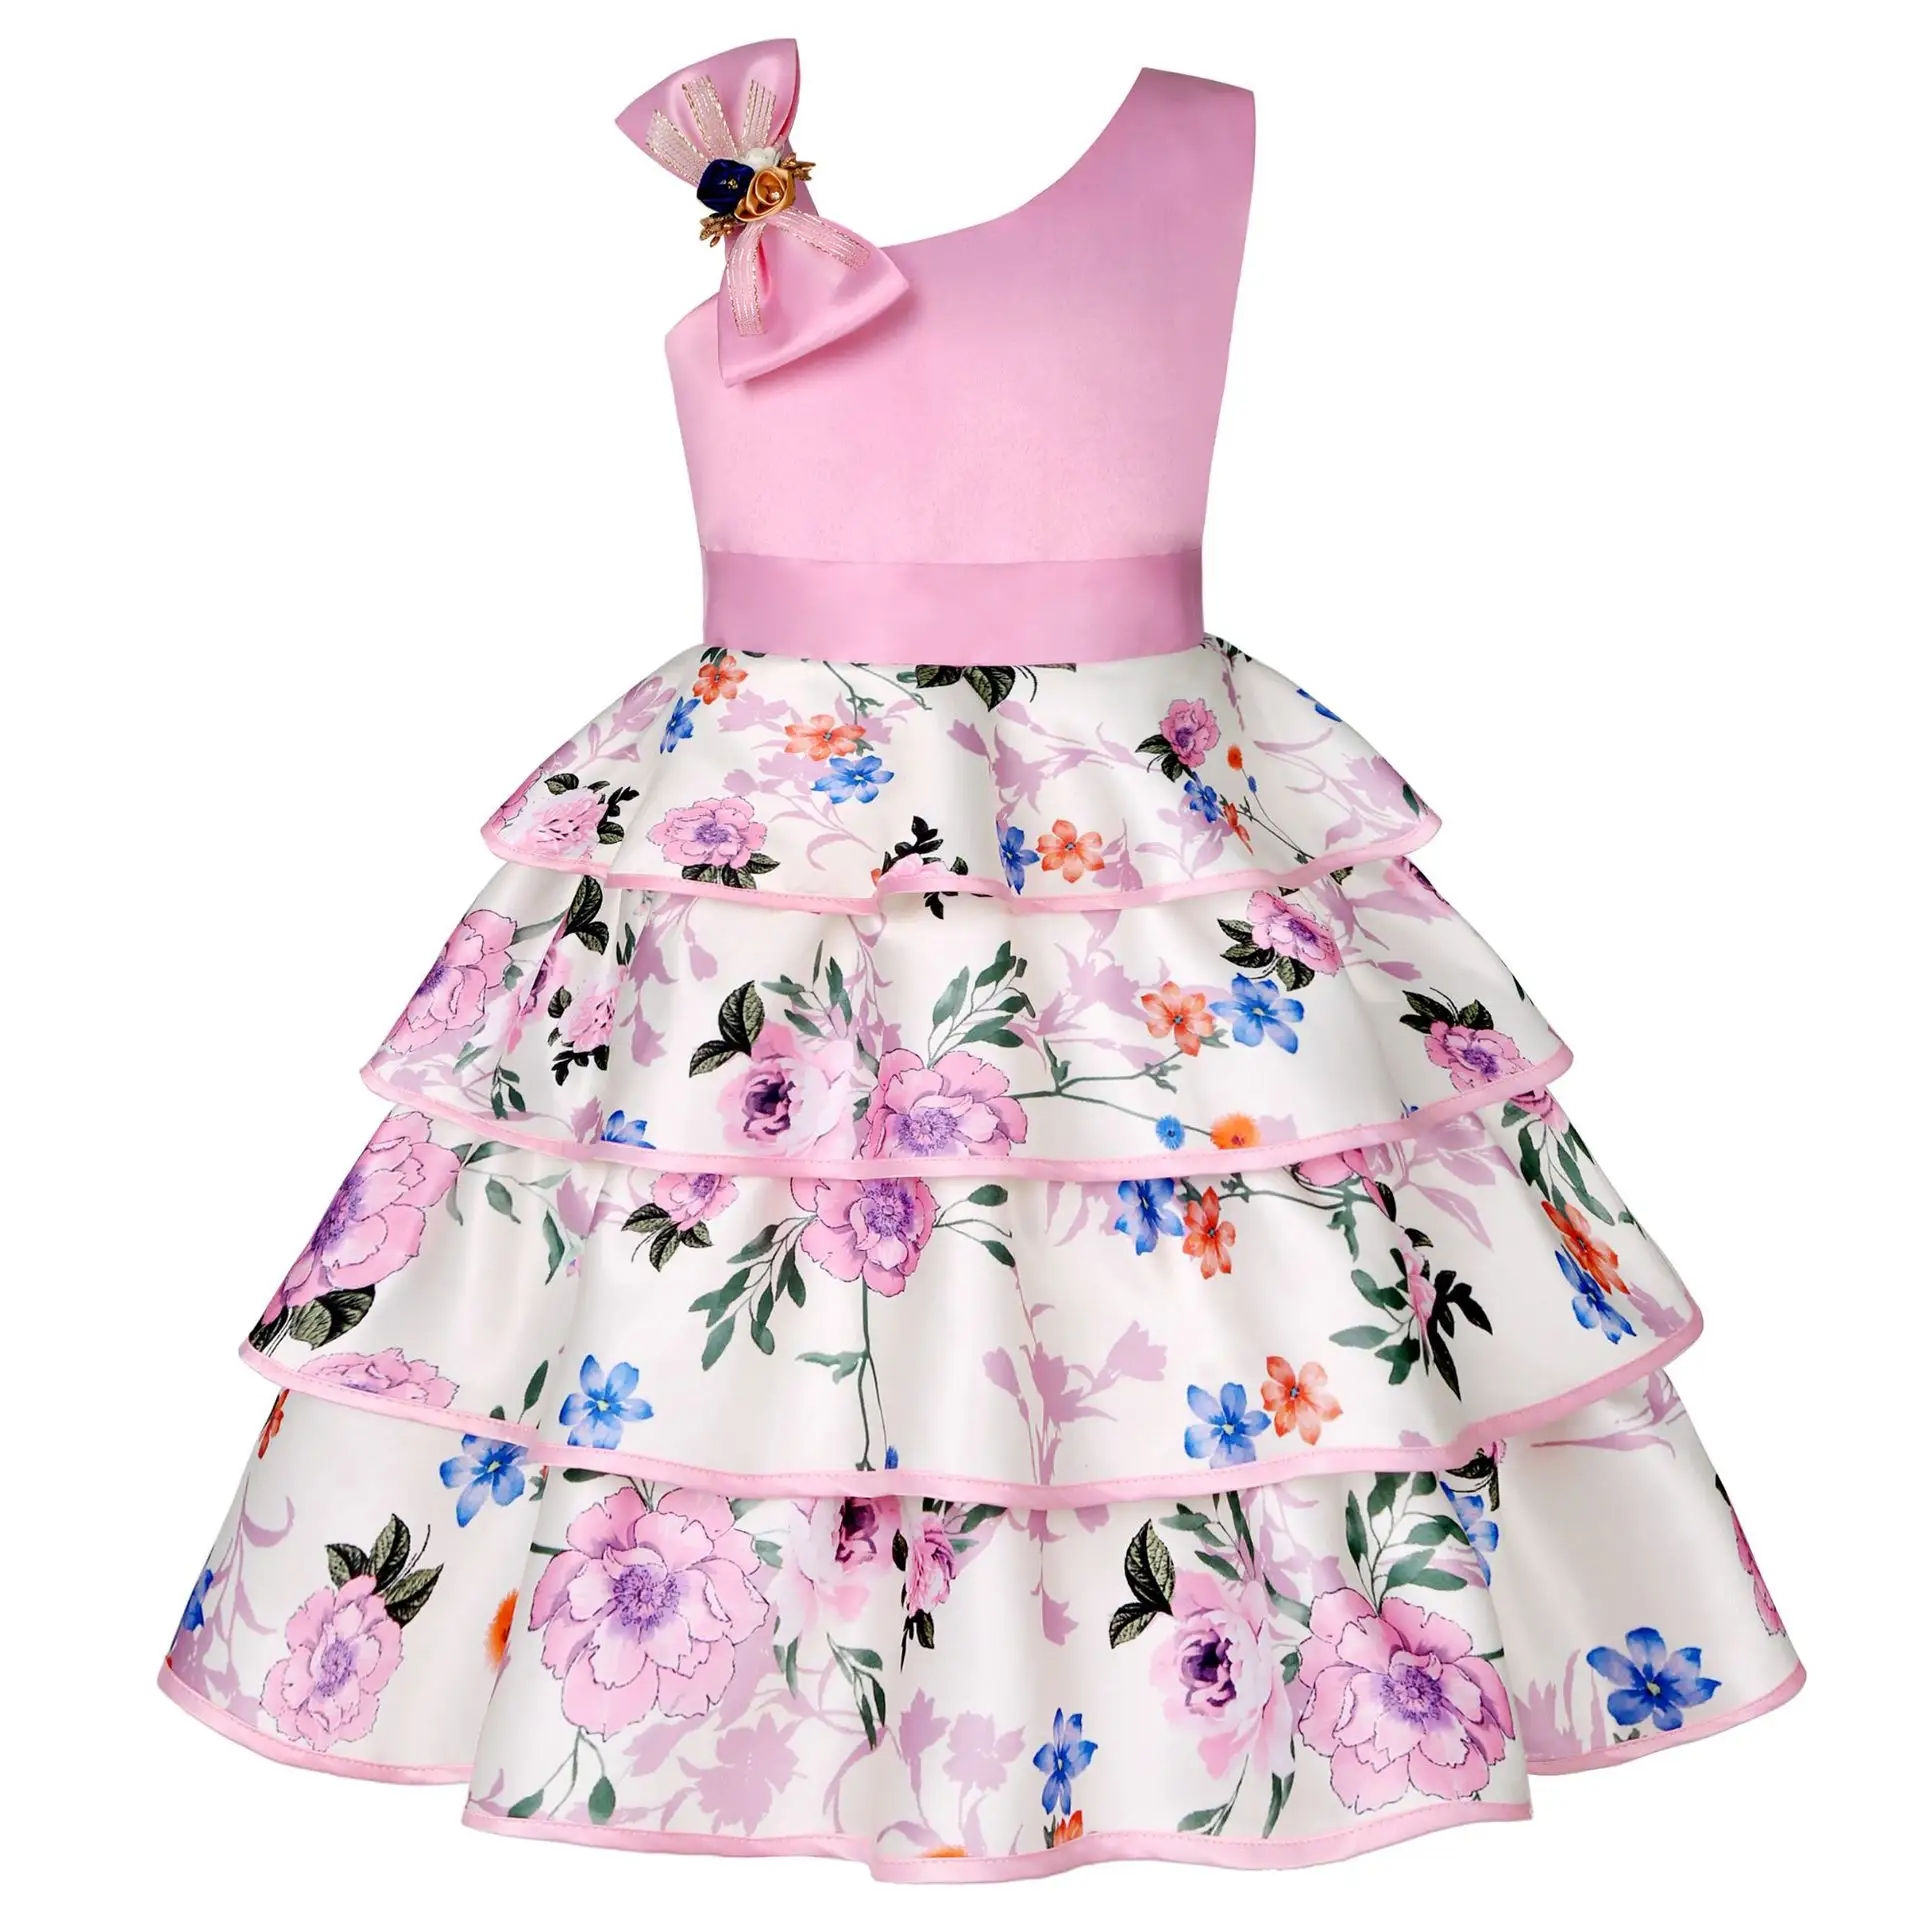 מכירה לוהטת תינוק בנות <span class=keywords><strong>שמלות</strong></span> סיטונאי קיץ ילדי בגדים חדש תינוקת מסיבת כותנה מודפס נסיכת בנות שמלה